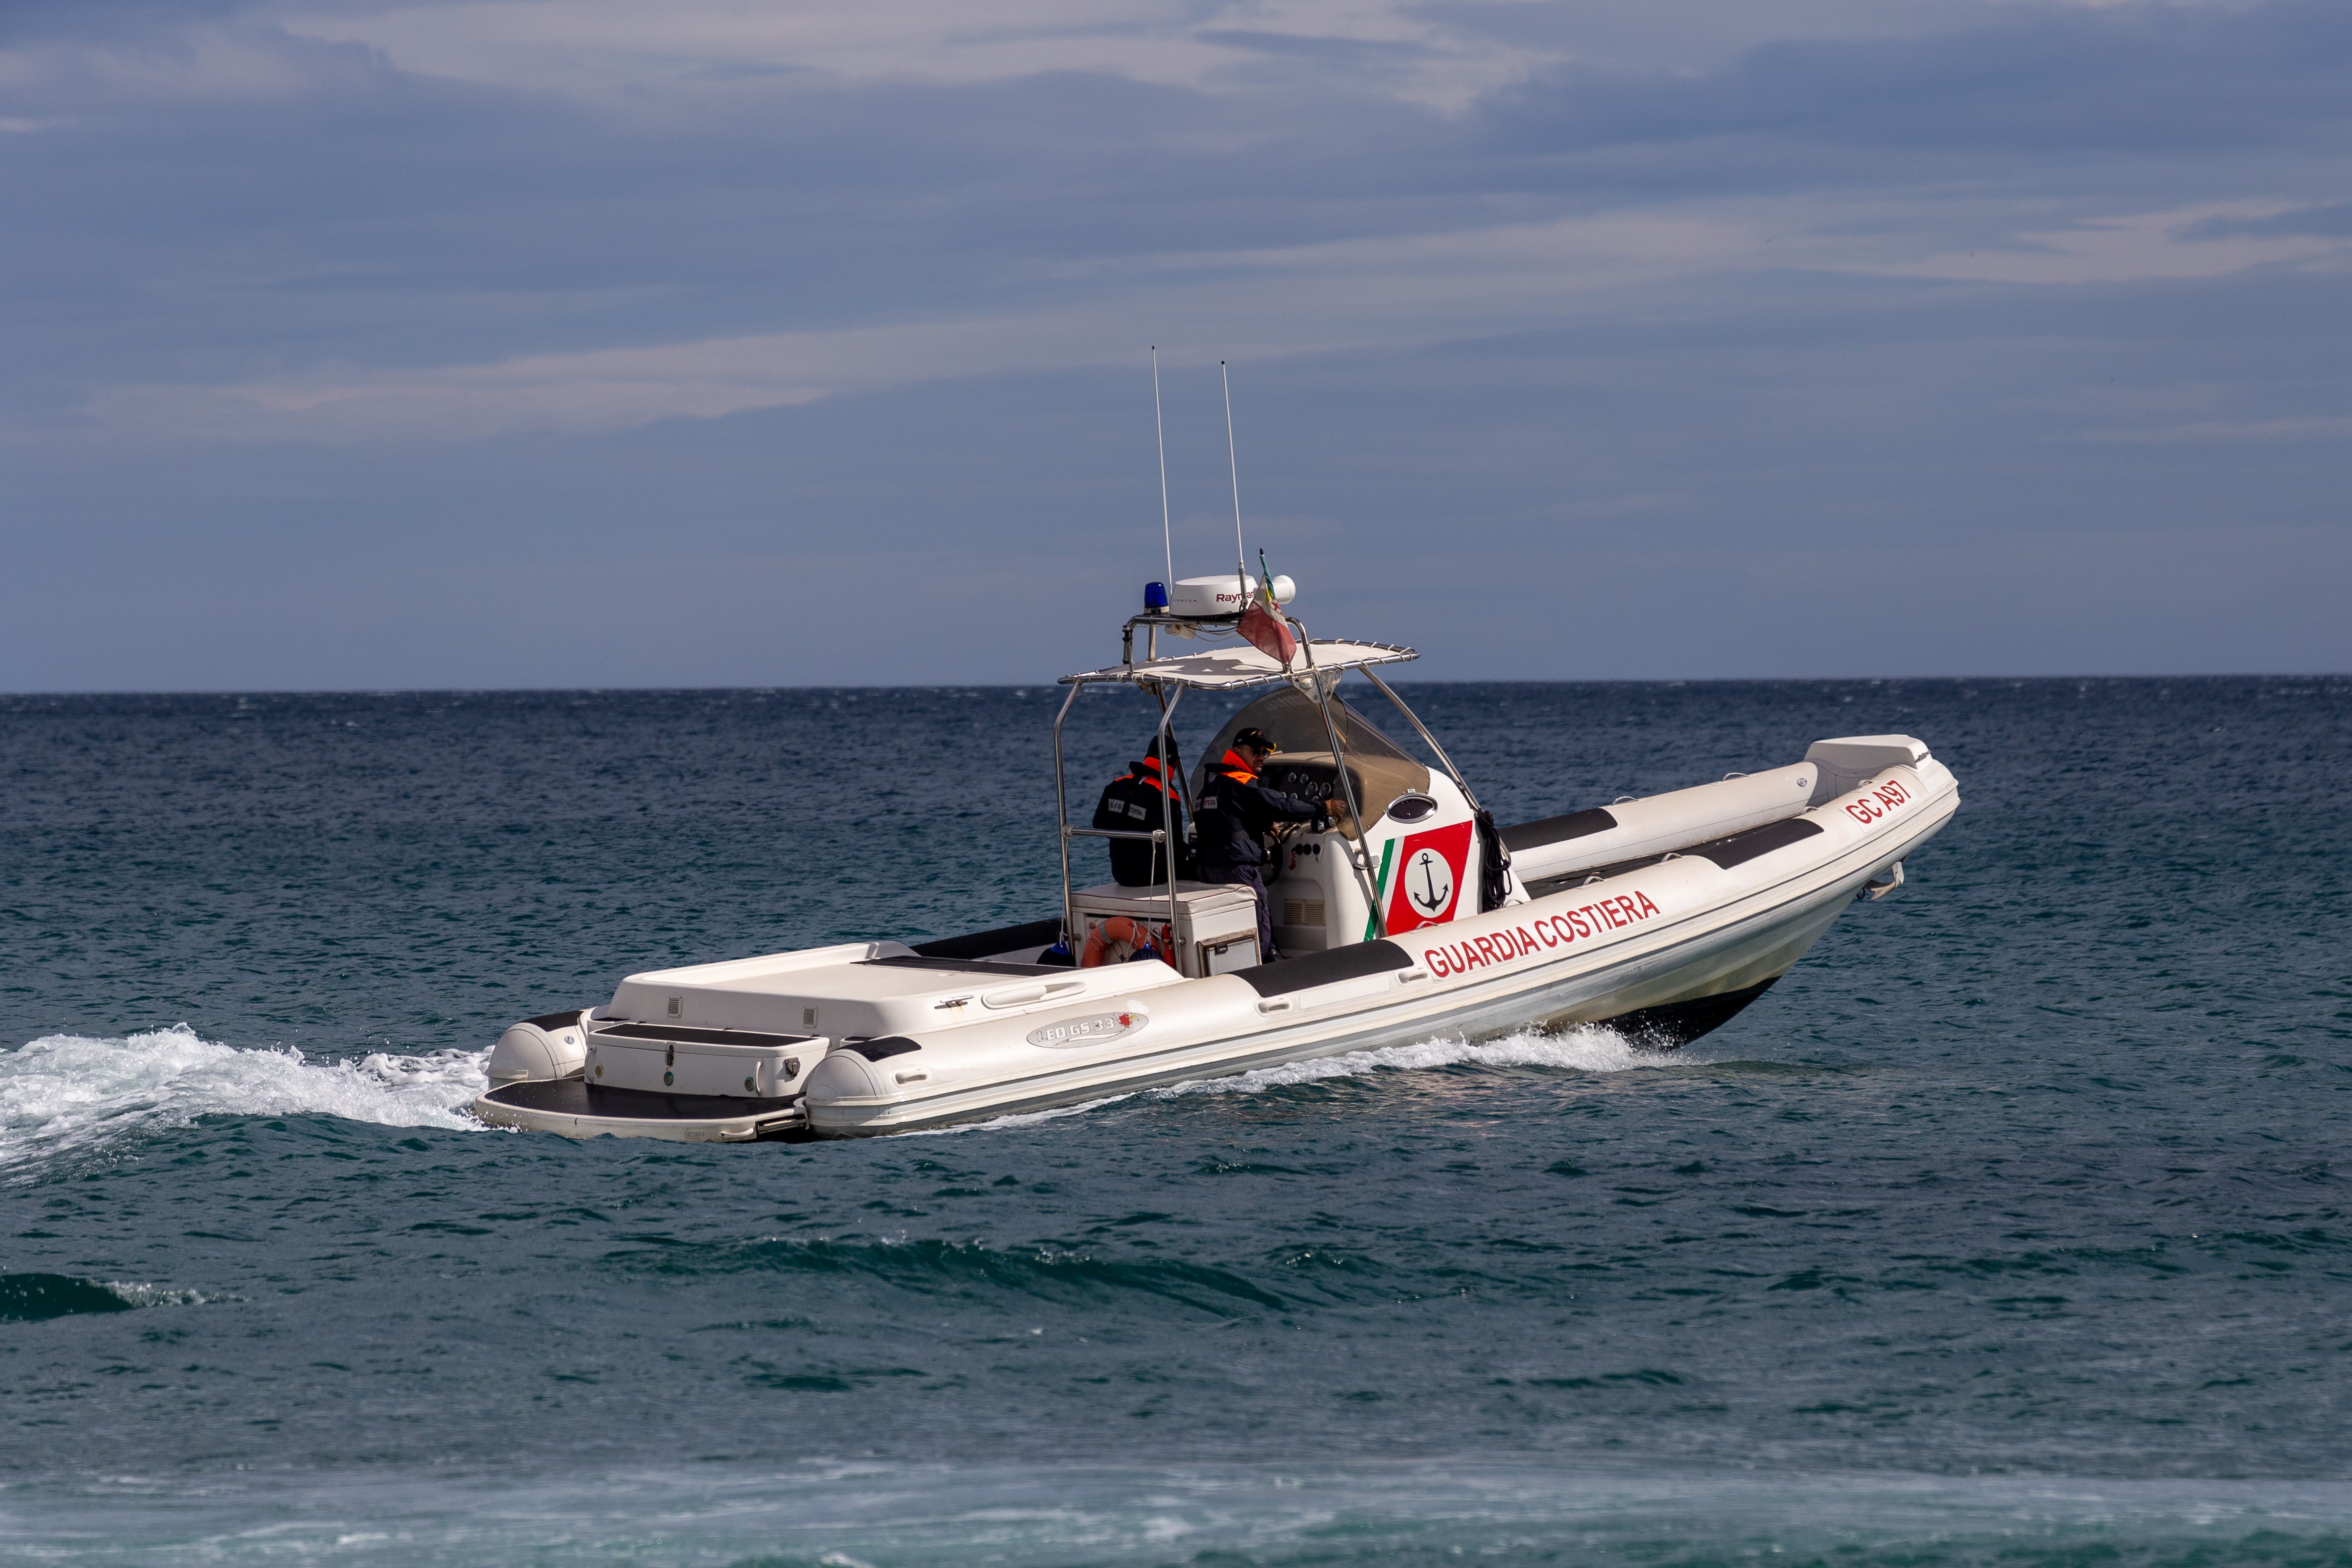 Guardia costiera, operazione mare sicuro: oltre mille sanzioni accertate